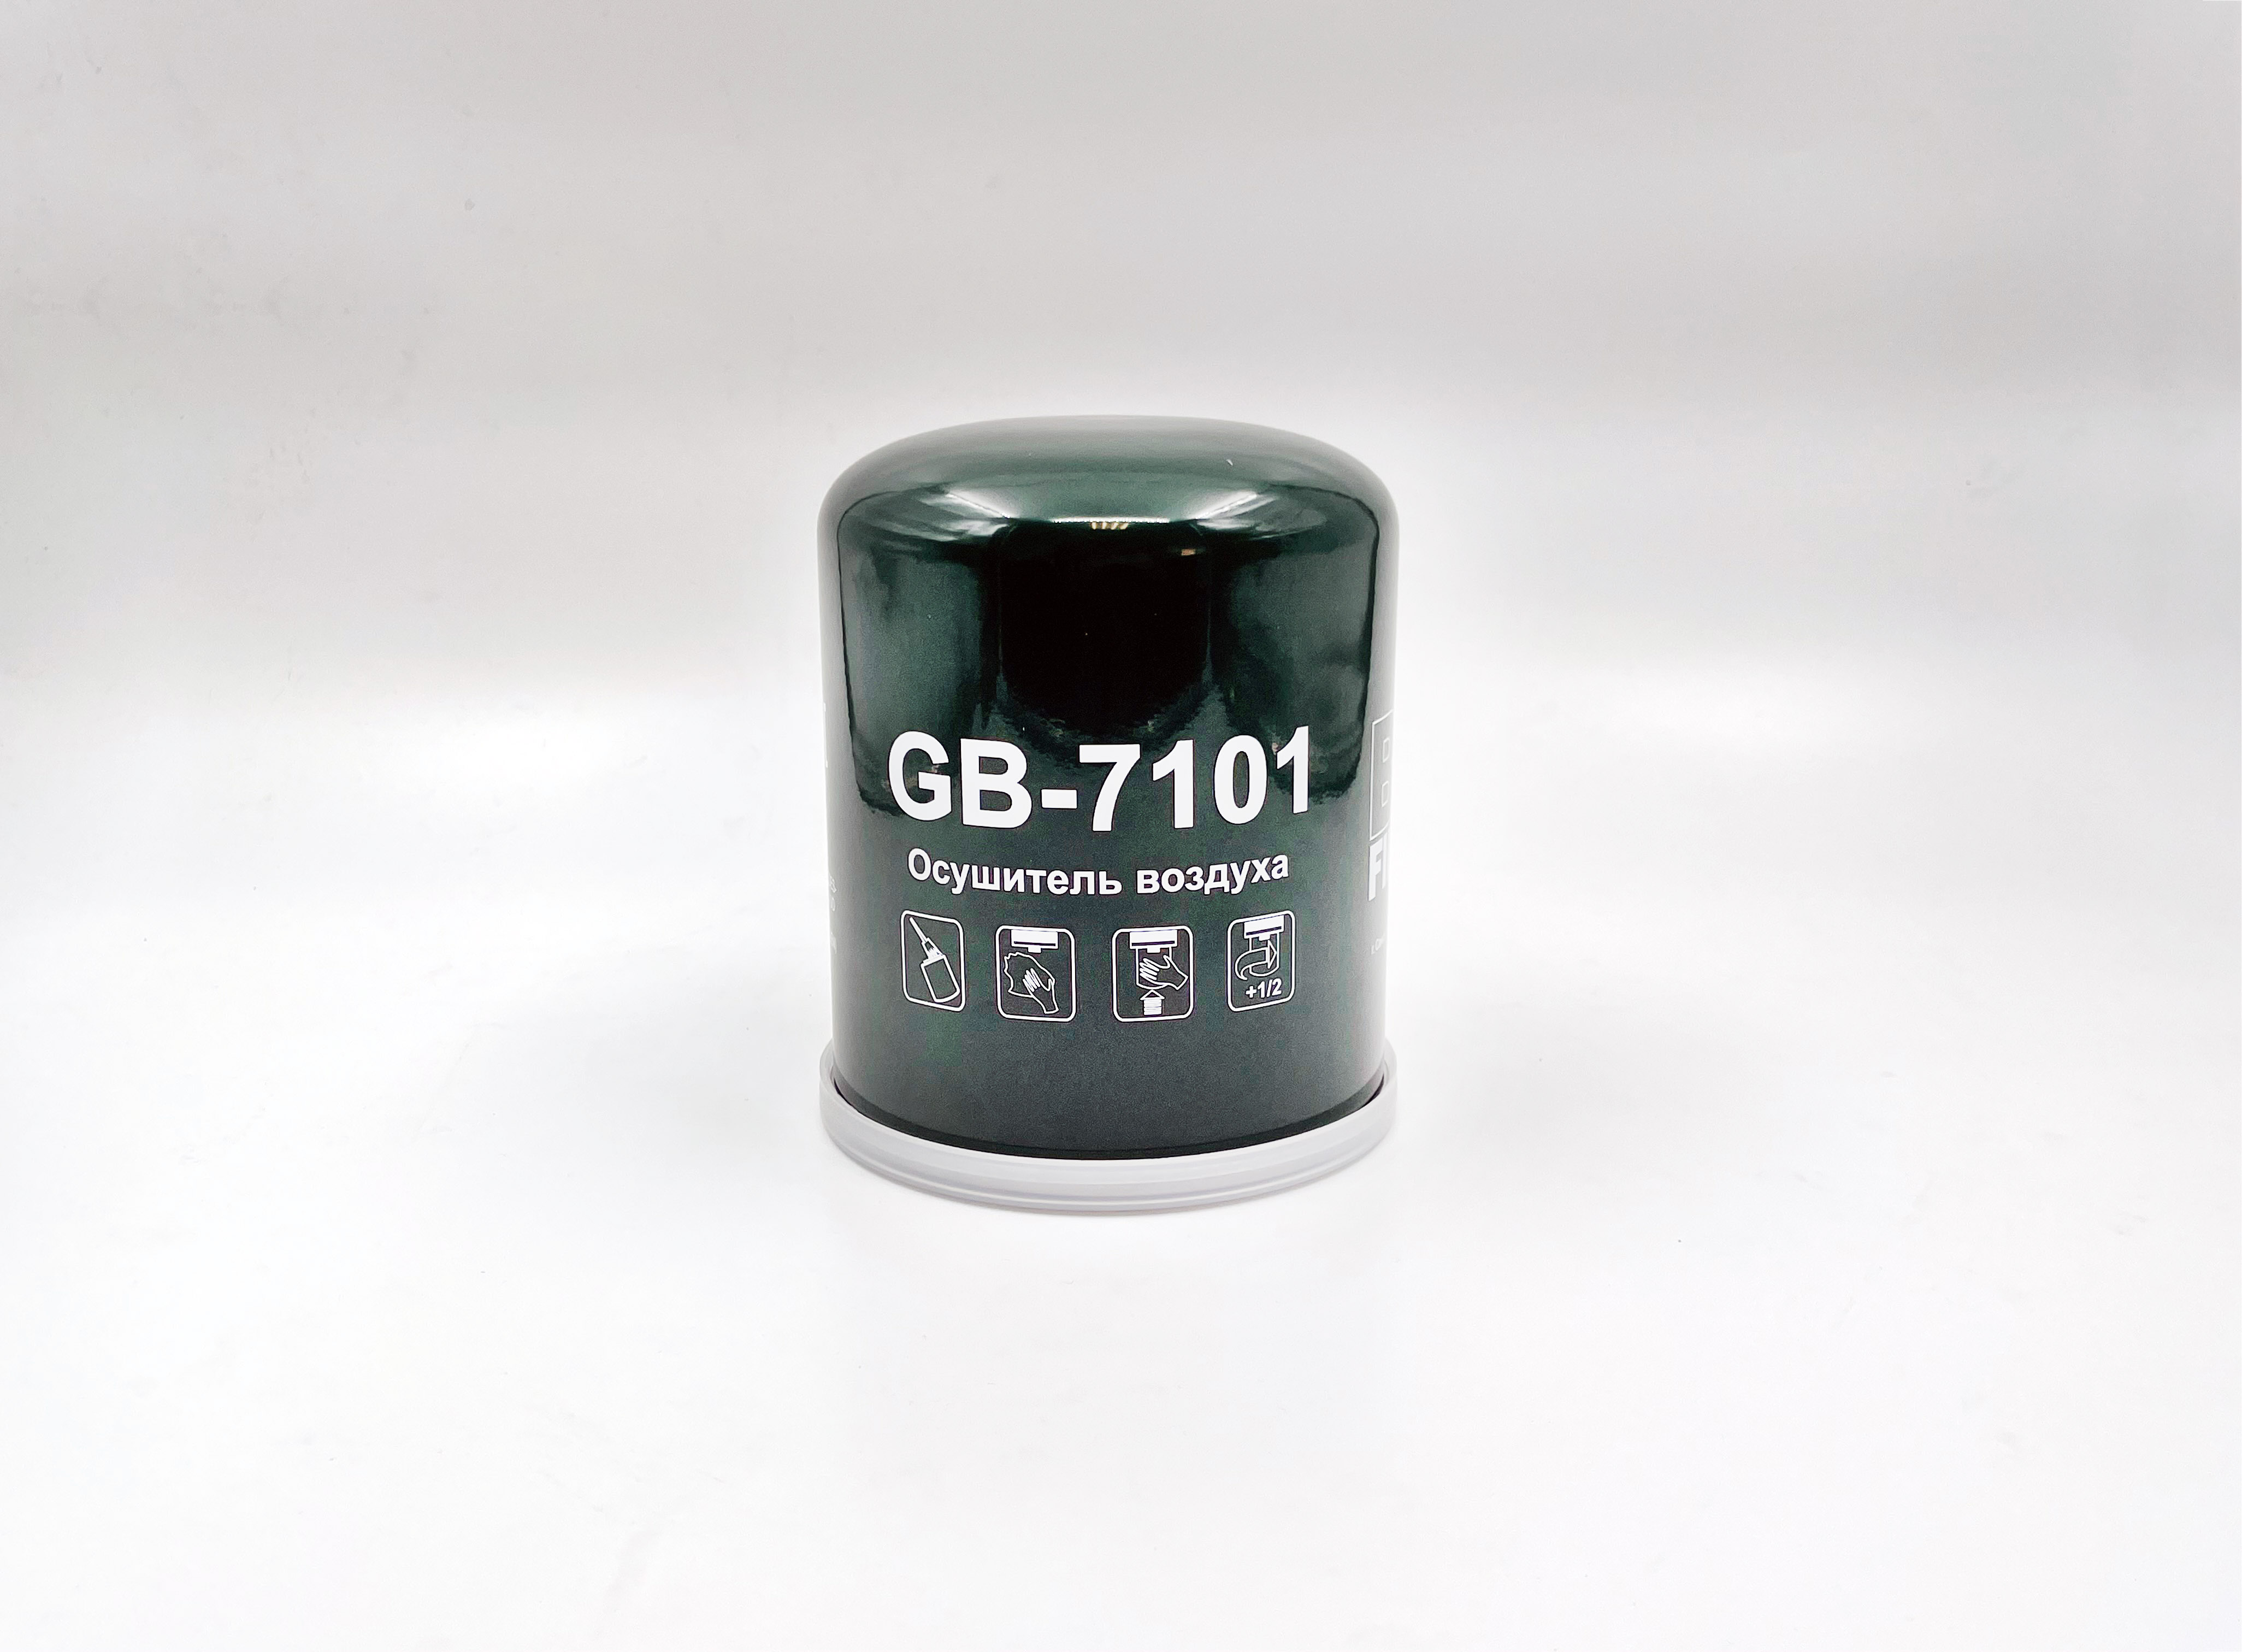 Фильтр влагоотделителя пневматической системы - BIG Filter GB-7101